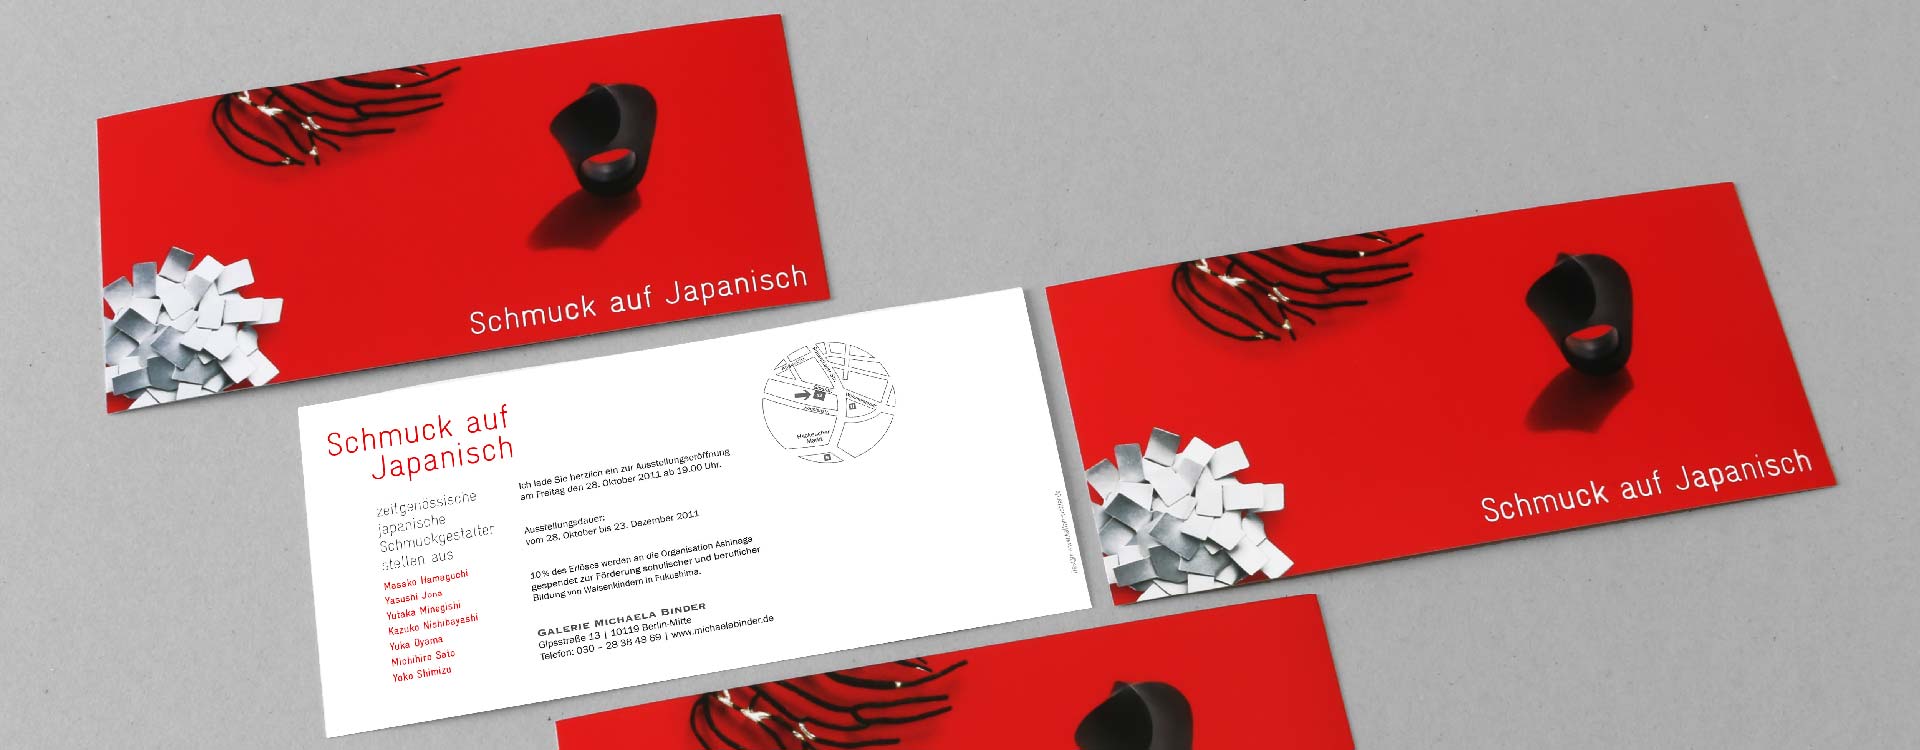 Invitation card for the Schmuck auf Japanisch jewellery exhibition 2011 in the gallery of Michaela Binder, Berlin; Design: Kattrin Richter | Graphic Design Studio